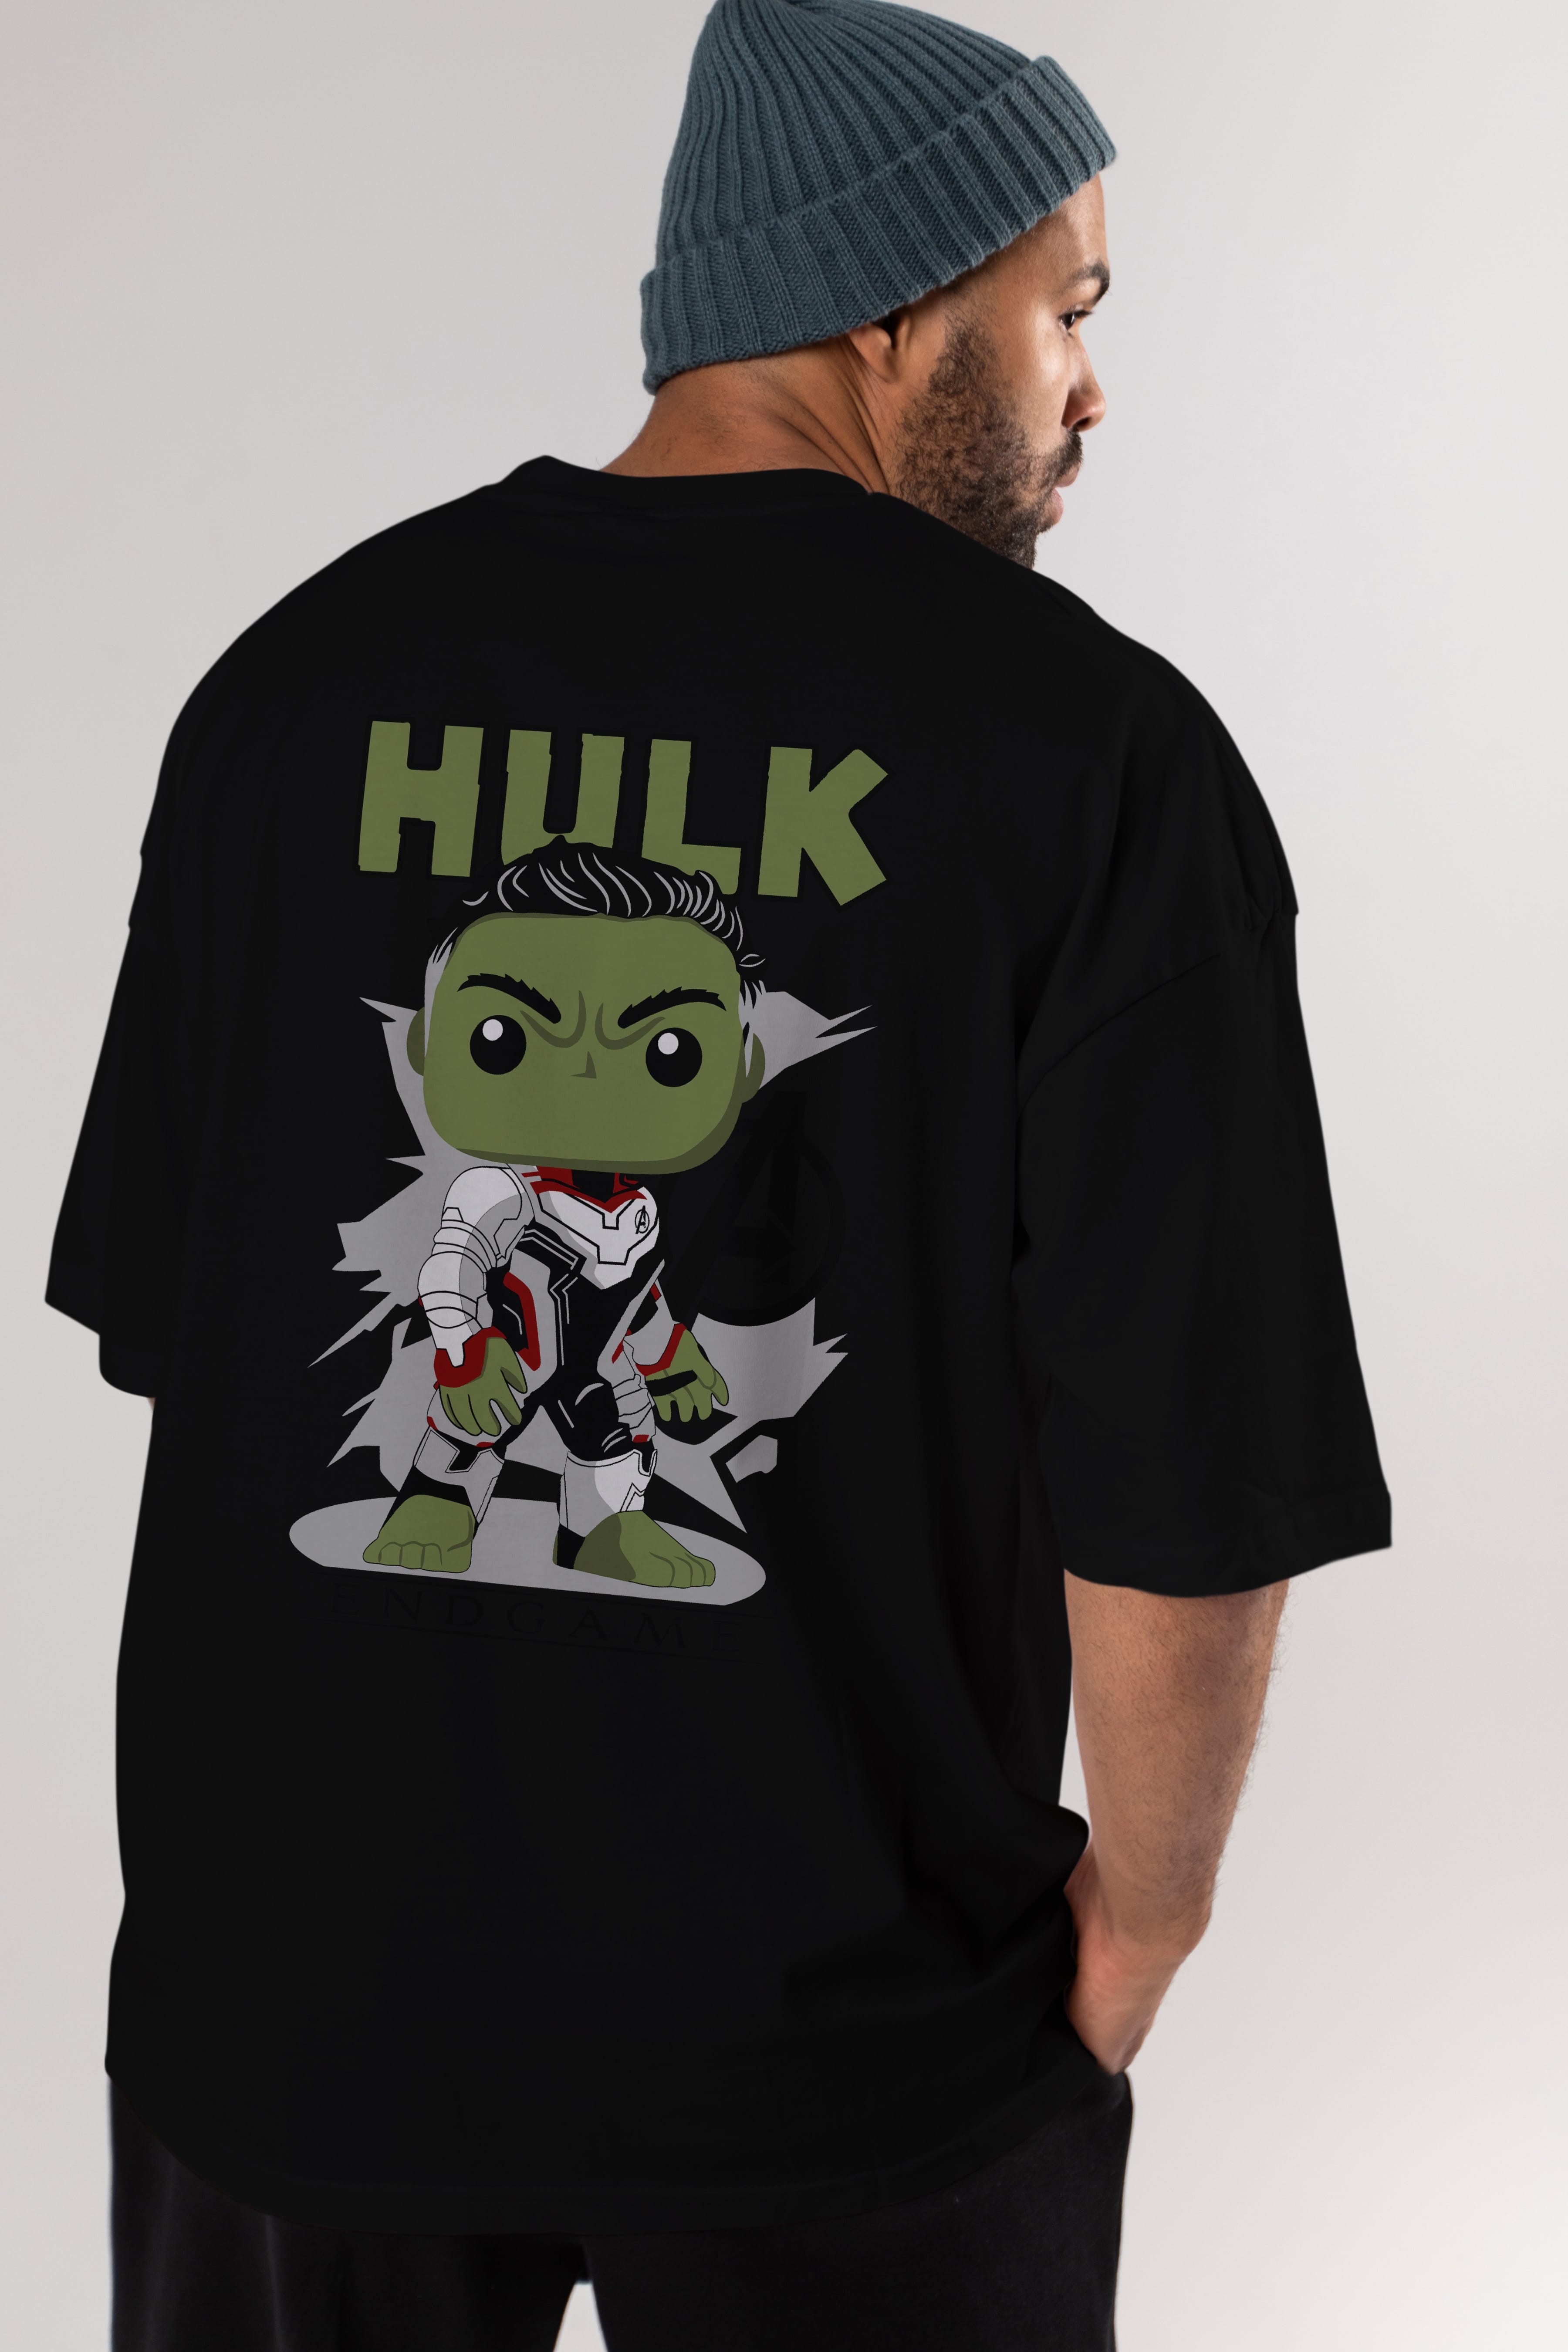 Hulk (9) Arka Baskılı Oversize t-shirt Erkek Kadın Unisex %100 Pamuk Bisiklet Yaka tişort